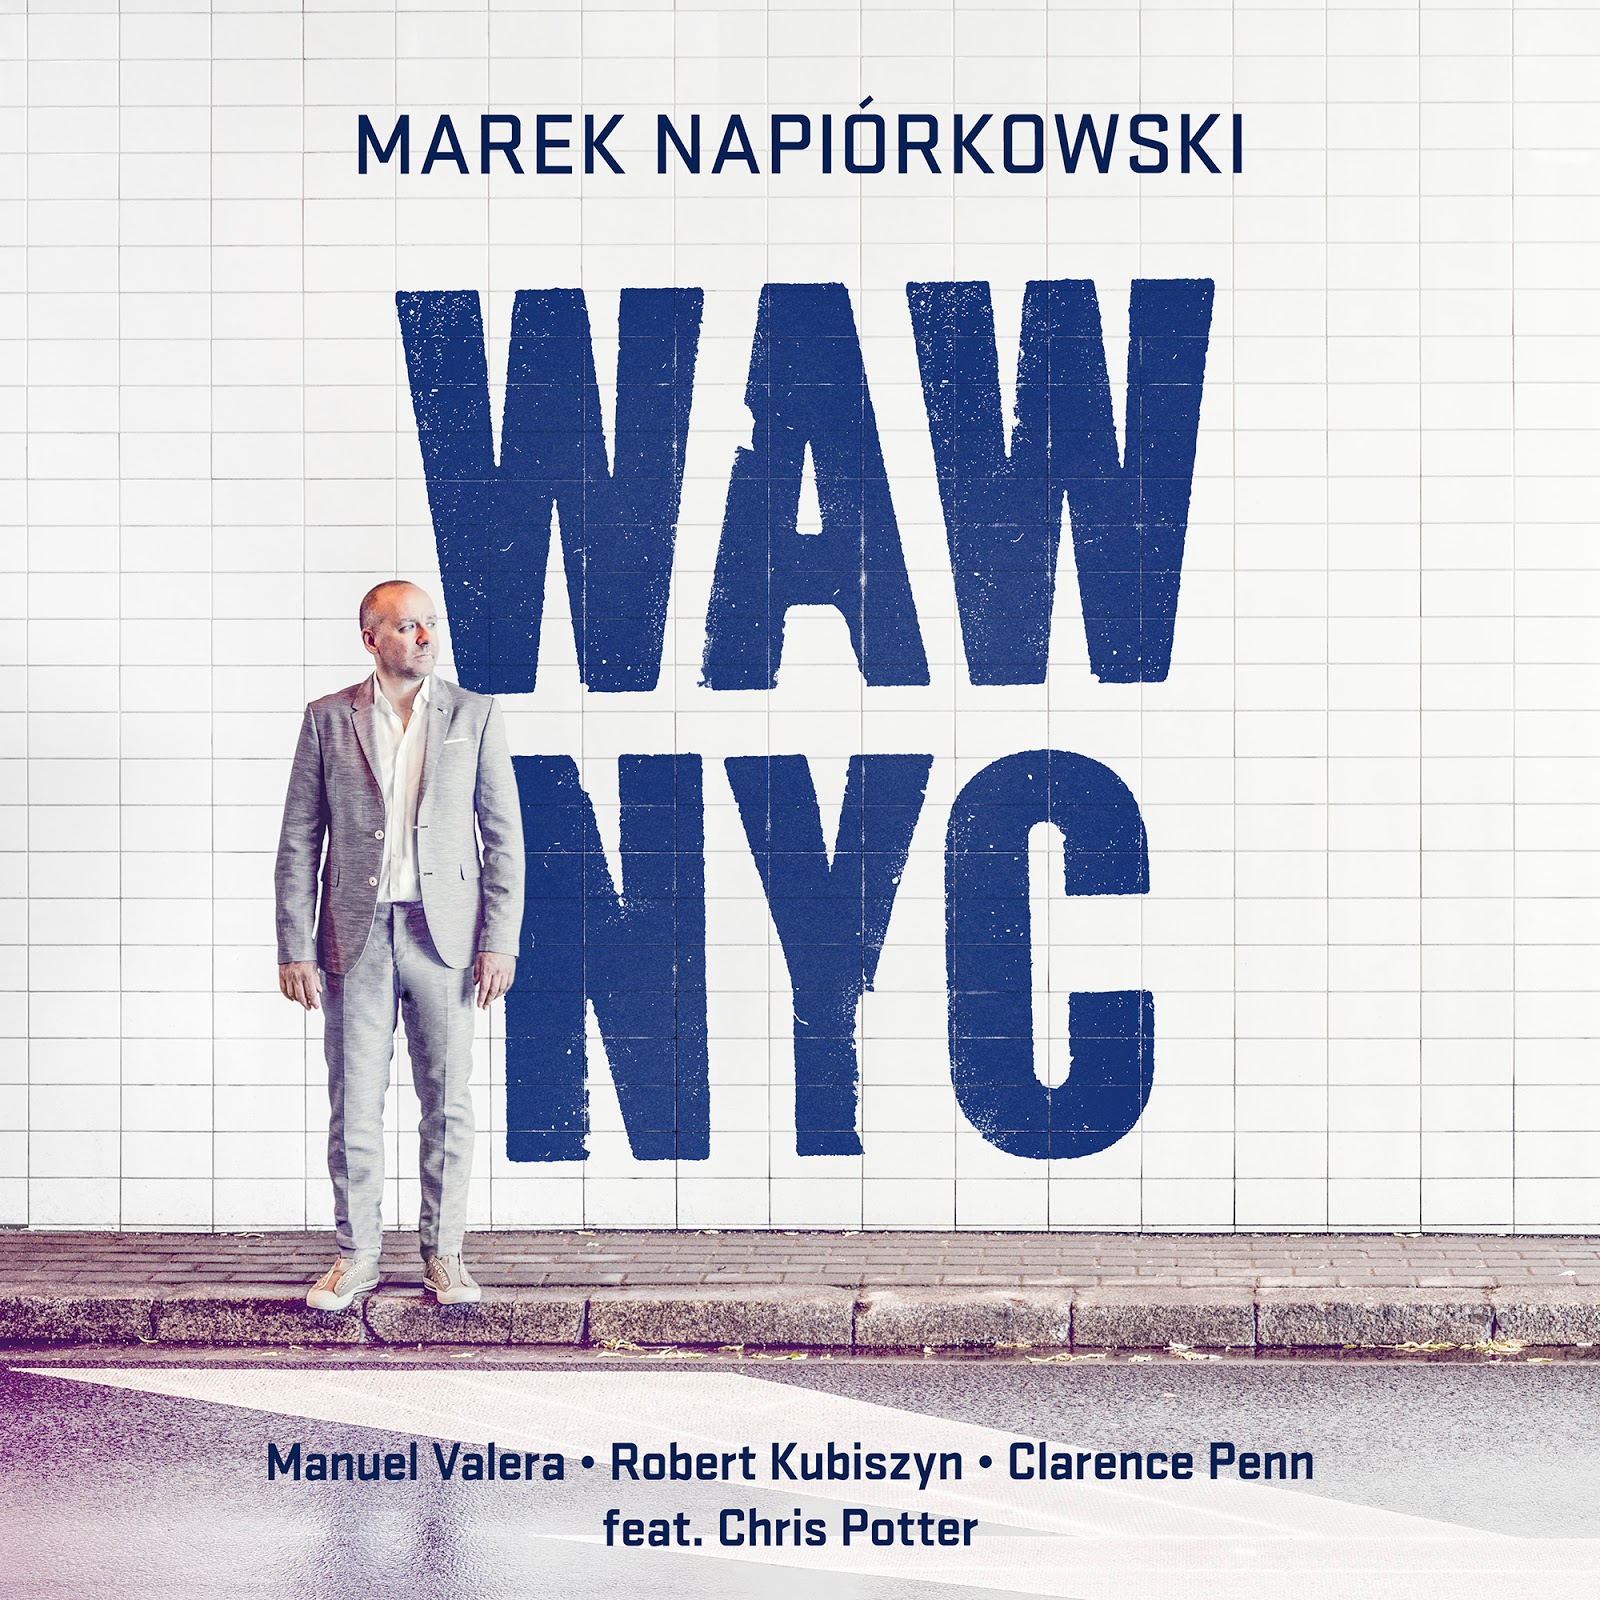 Marek Napiórkowski "The Way" - jazzowy teledysk roku!